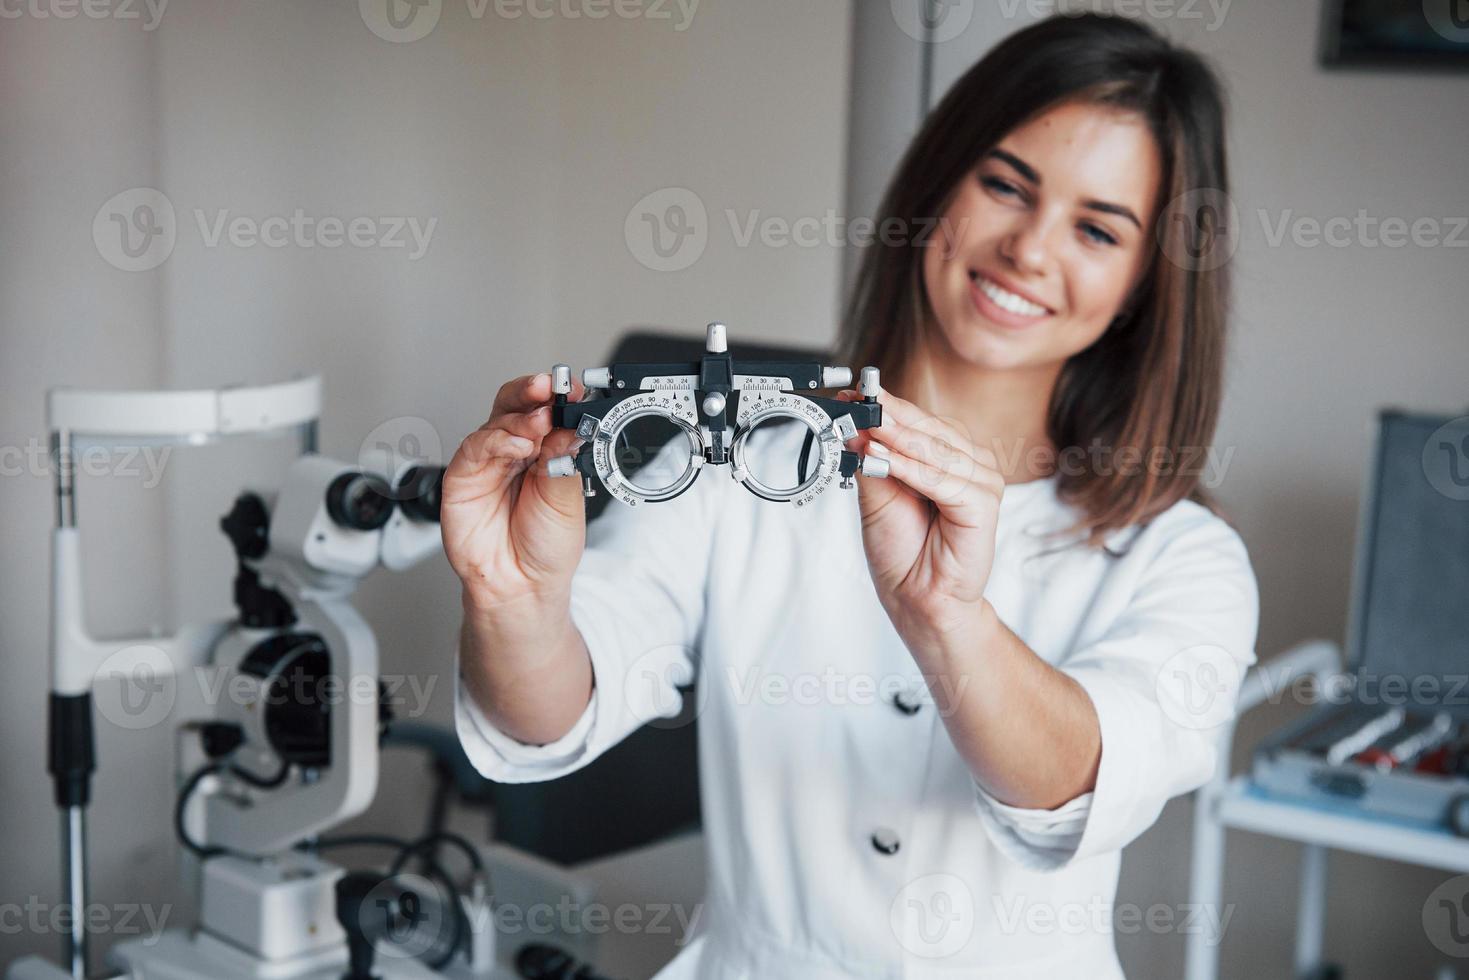 outro equipamento na sala. jovem e atraente oftalmologista com dispositivo especial para testar olhos em pé no escritório foto